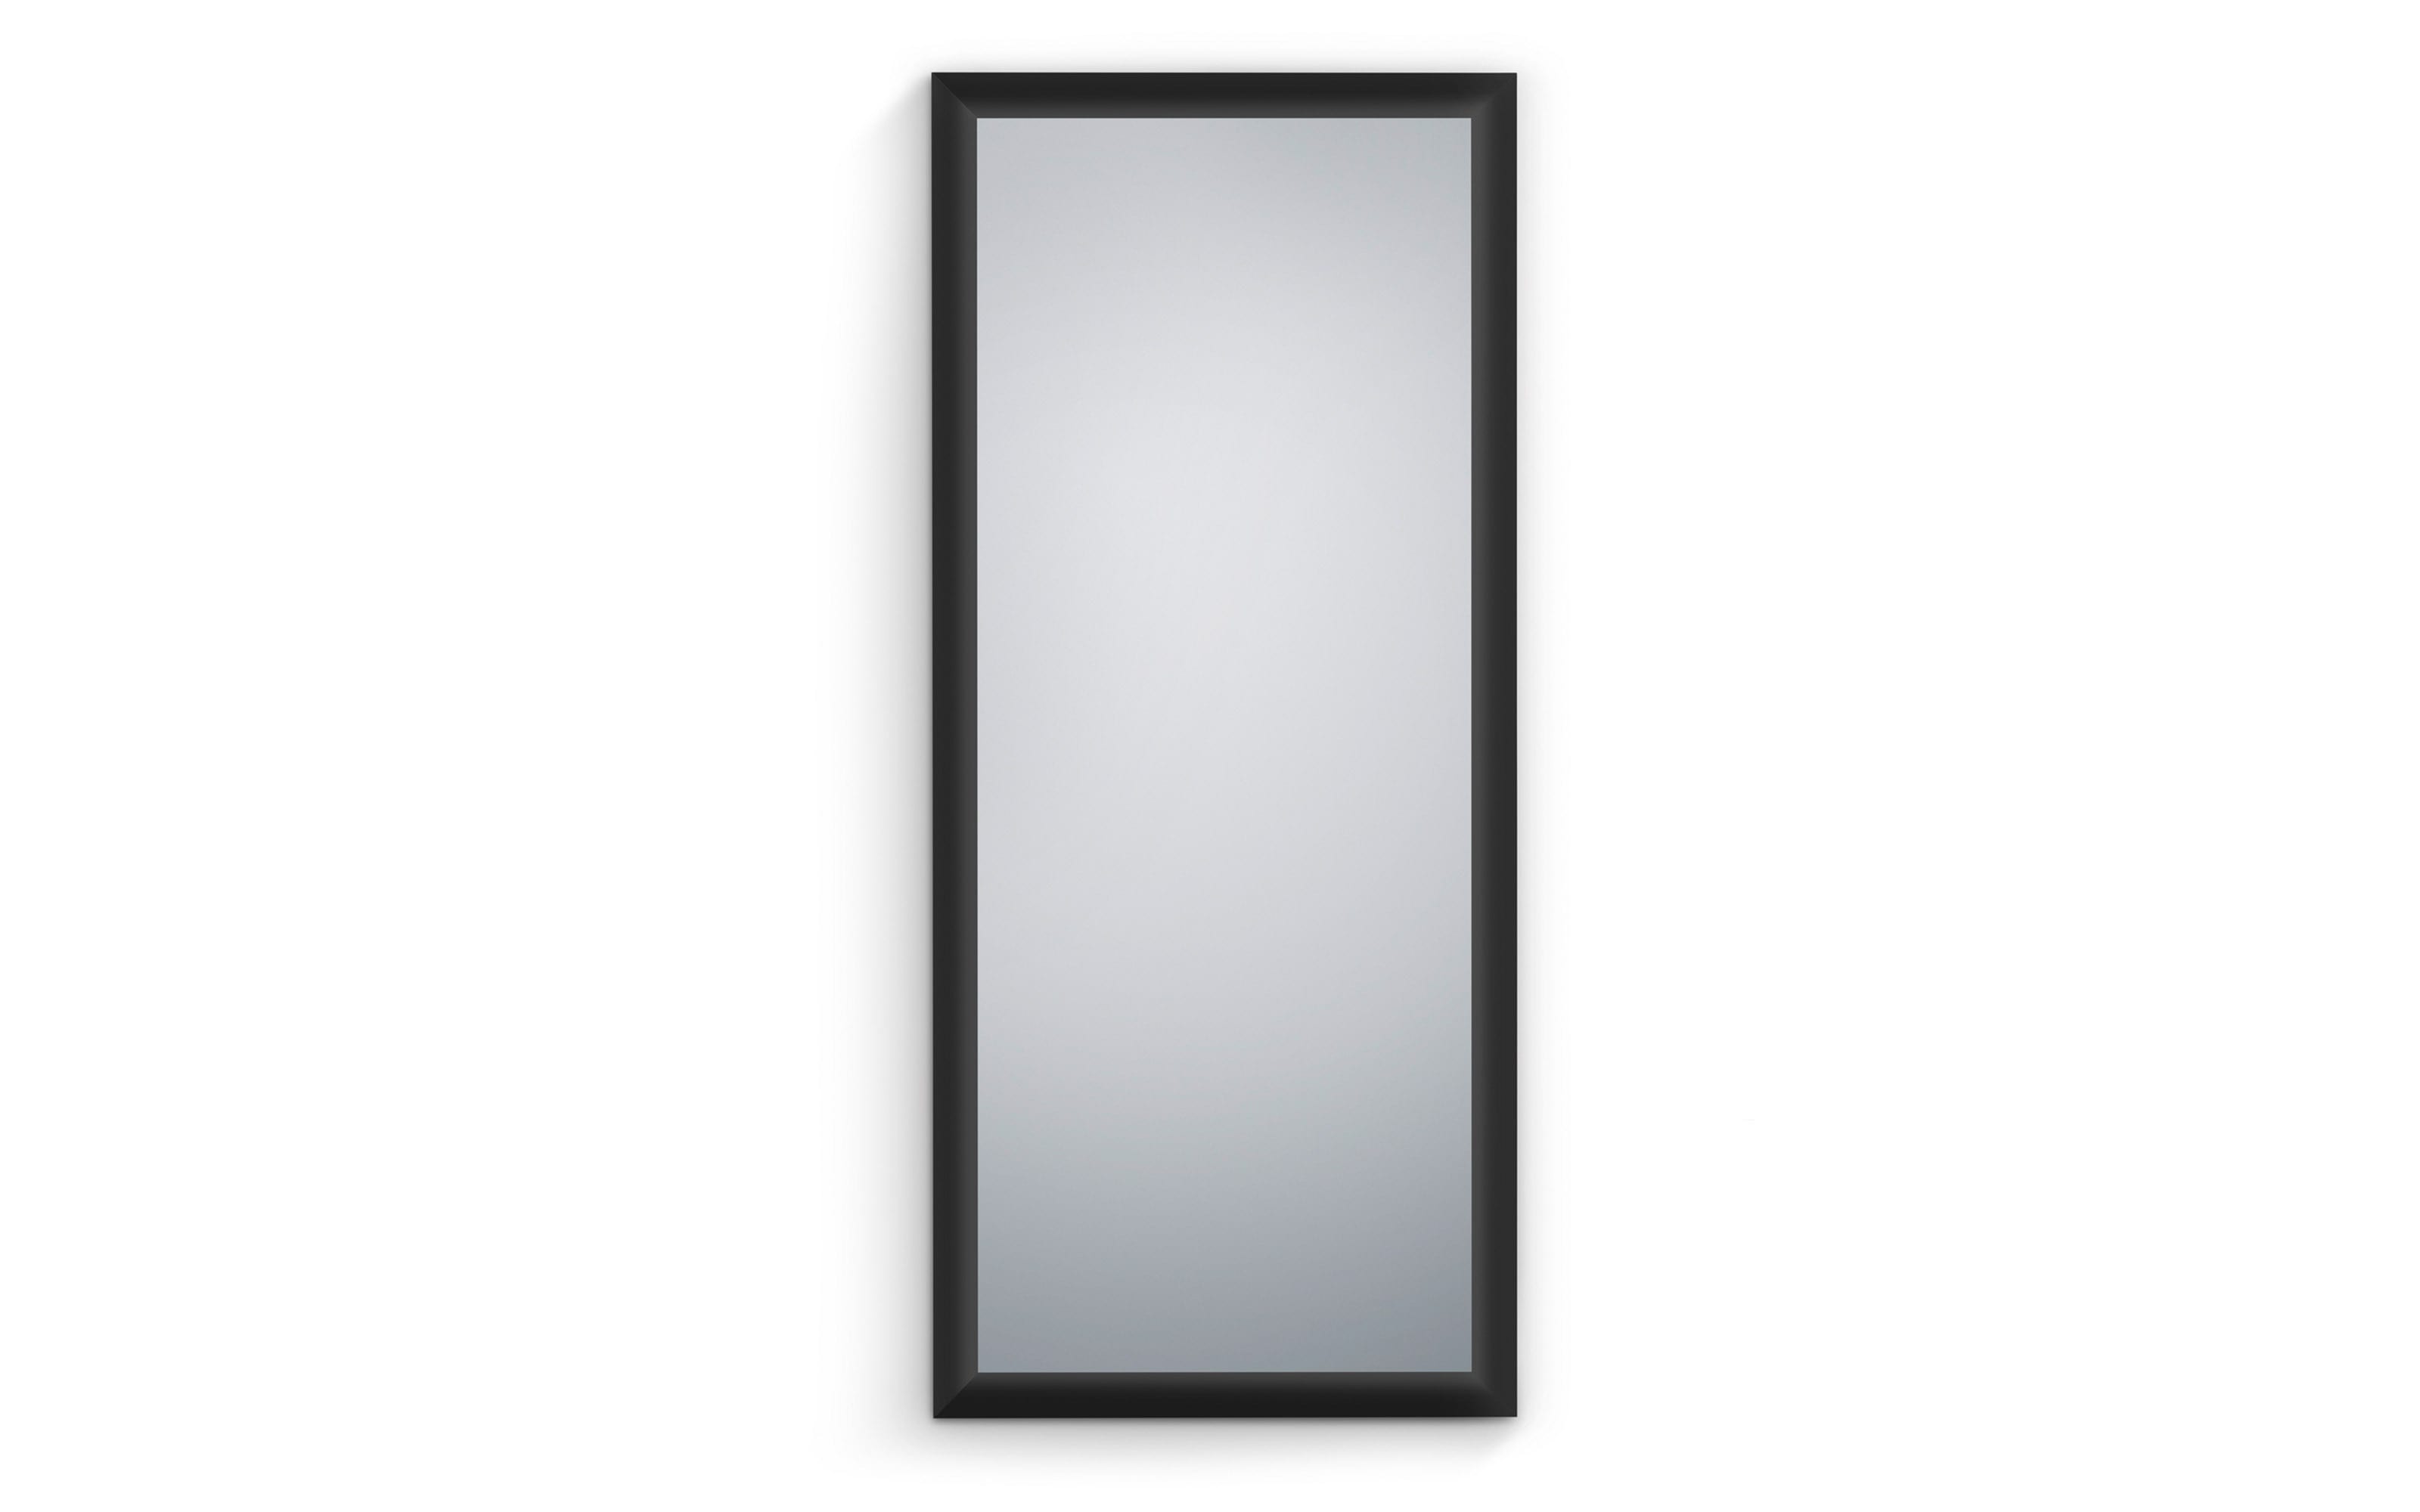 Rahmenspiegel Marie in schwarz, 78 x 178 cm